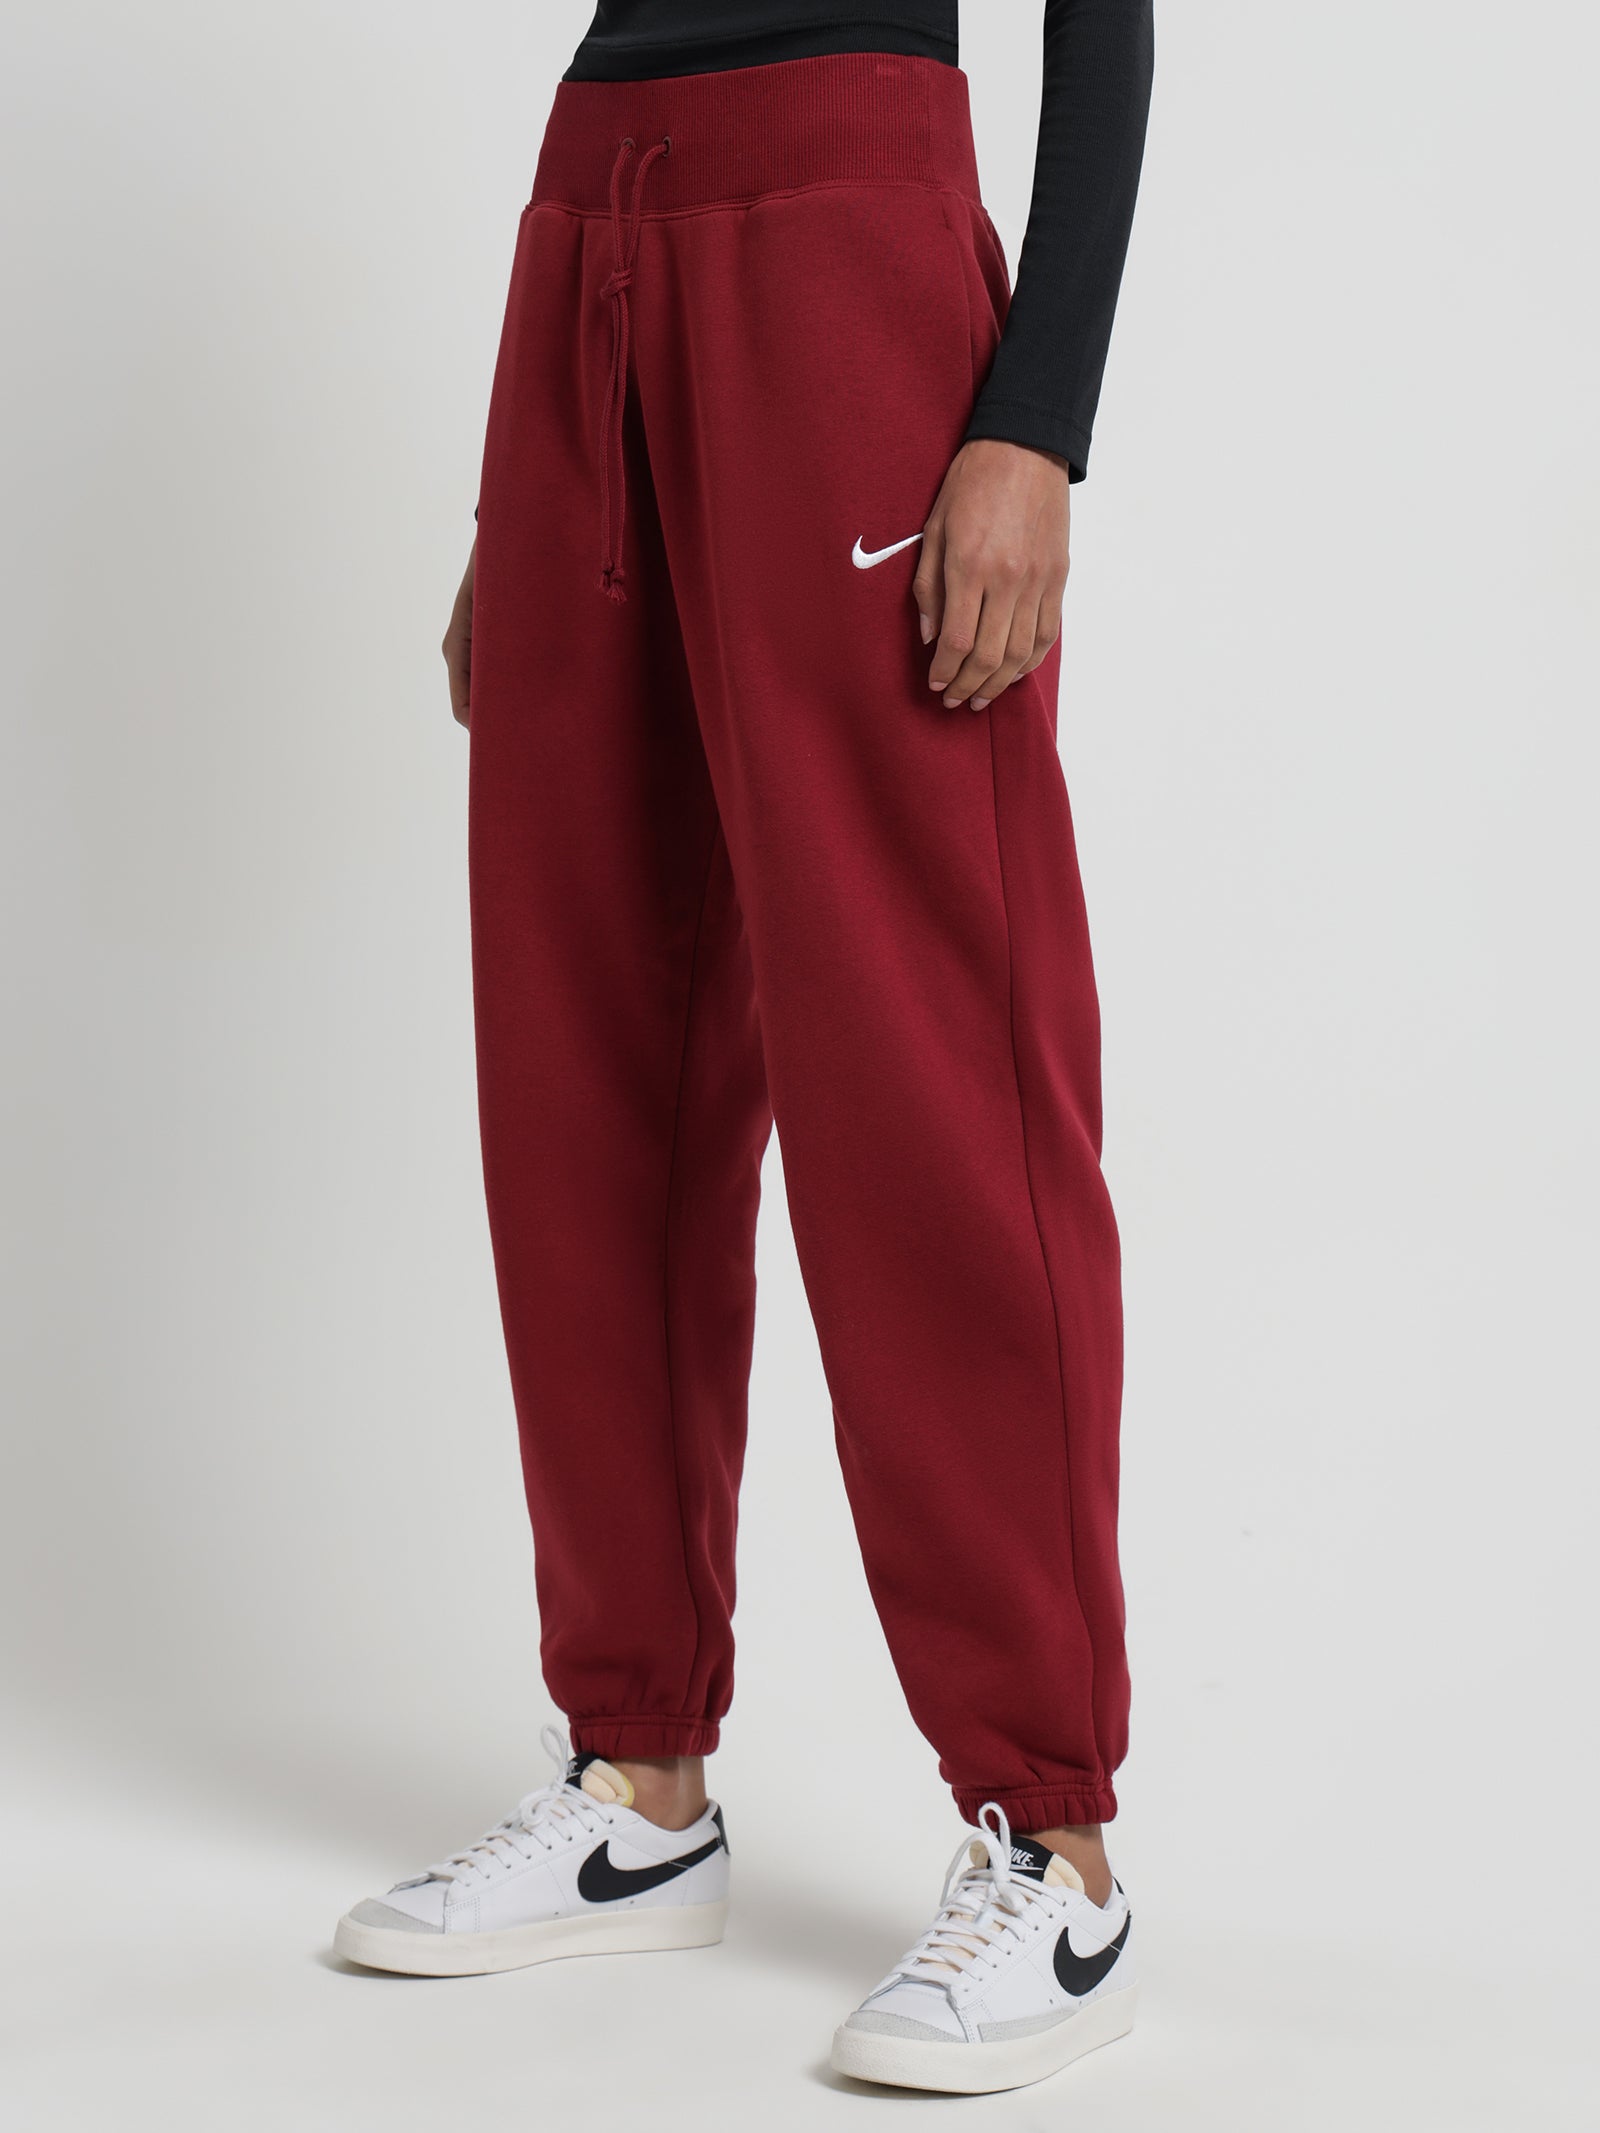 Women's Nike Sportswear Phoenix Fleece Oversized High-Waist Jogger Pants